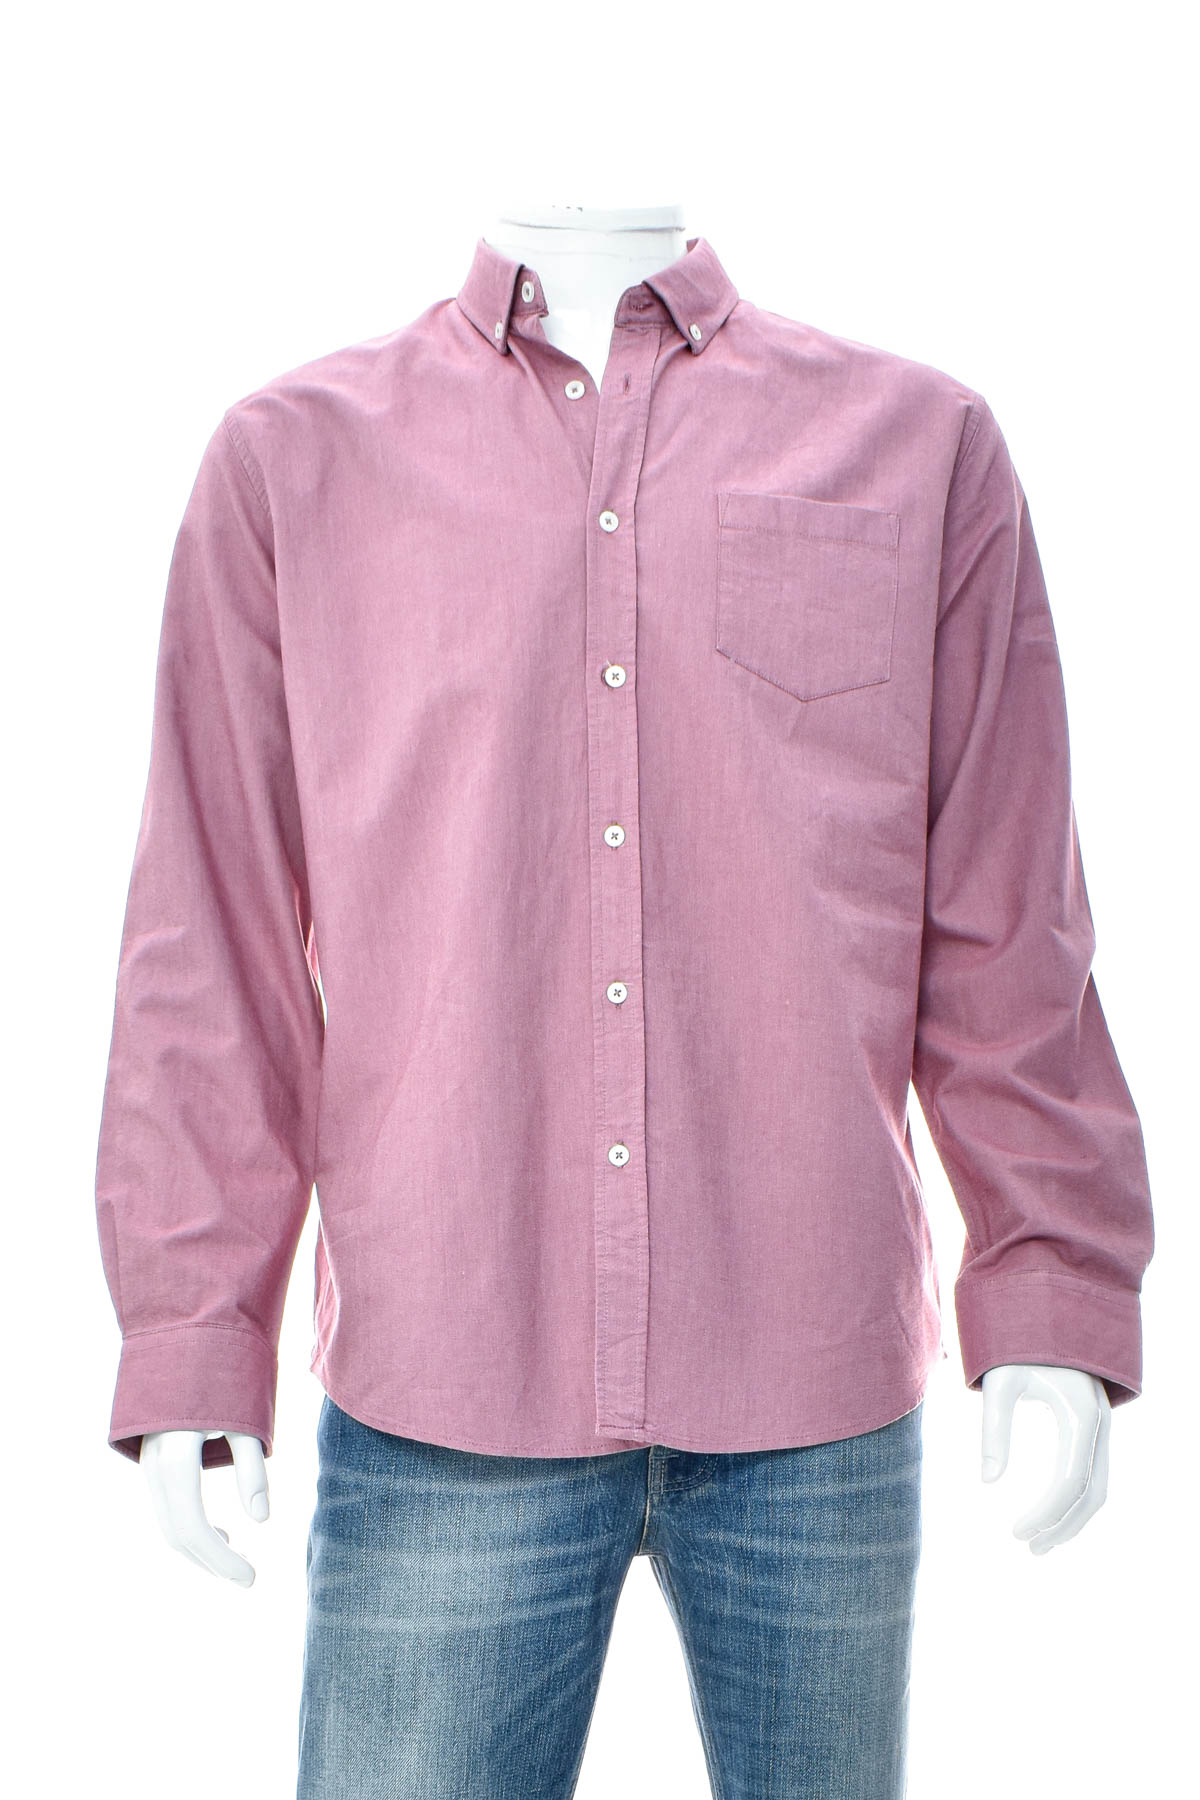 Ανδρικό πουκάμισο - TAROCASH - 0